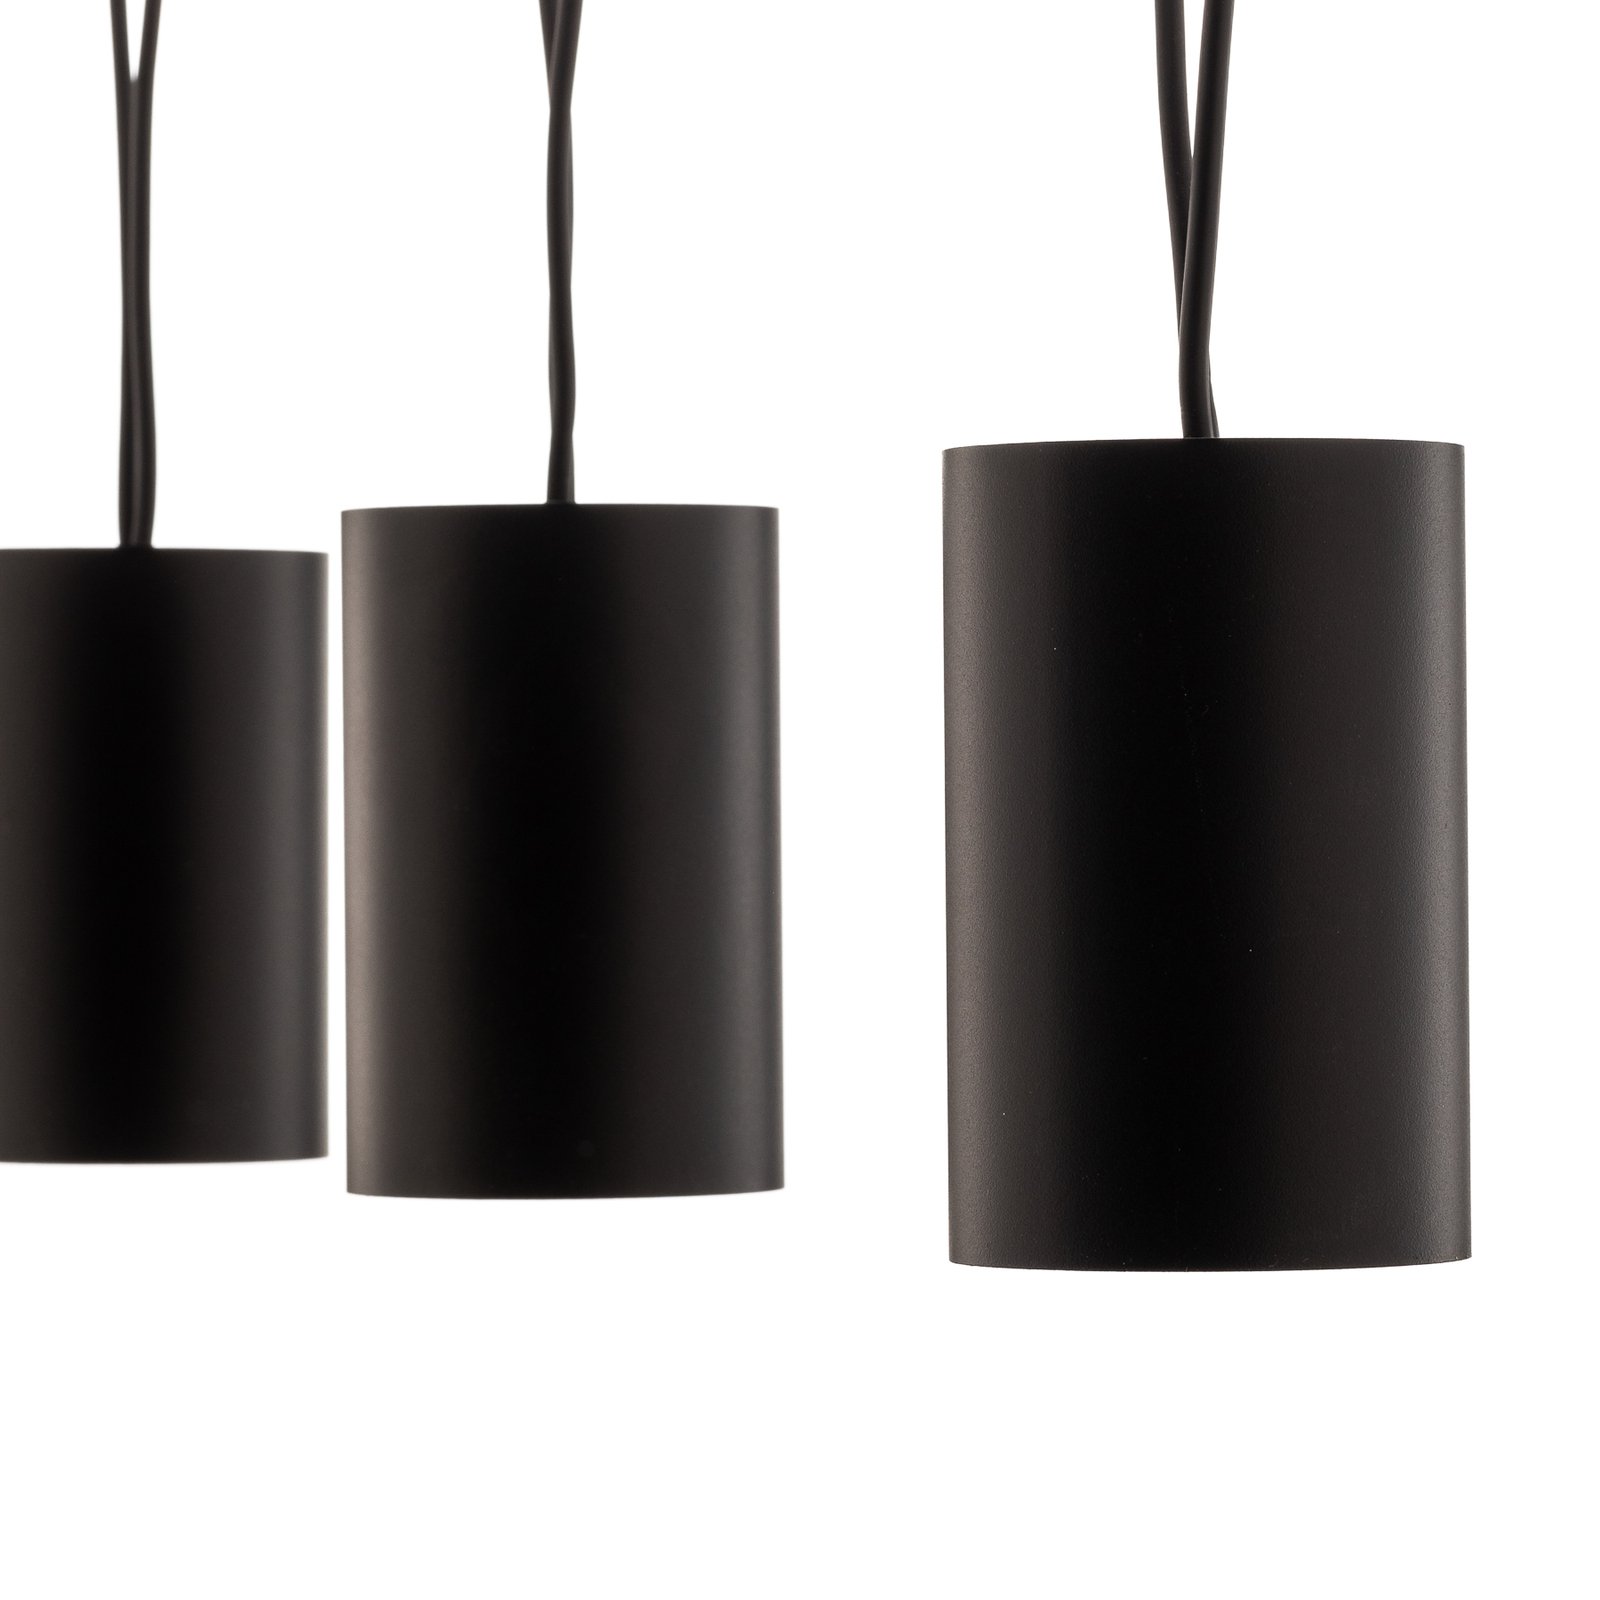 More Tone hanglamp, zwart/goud, 5-lamps uitvoering